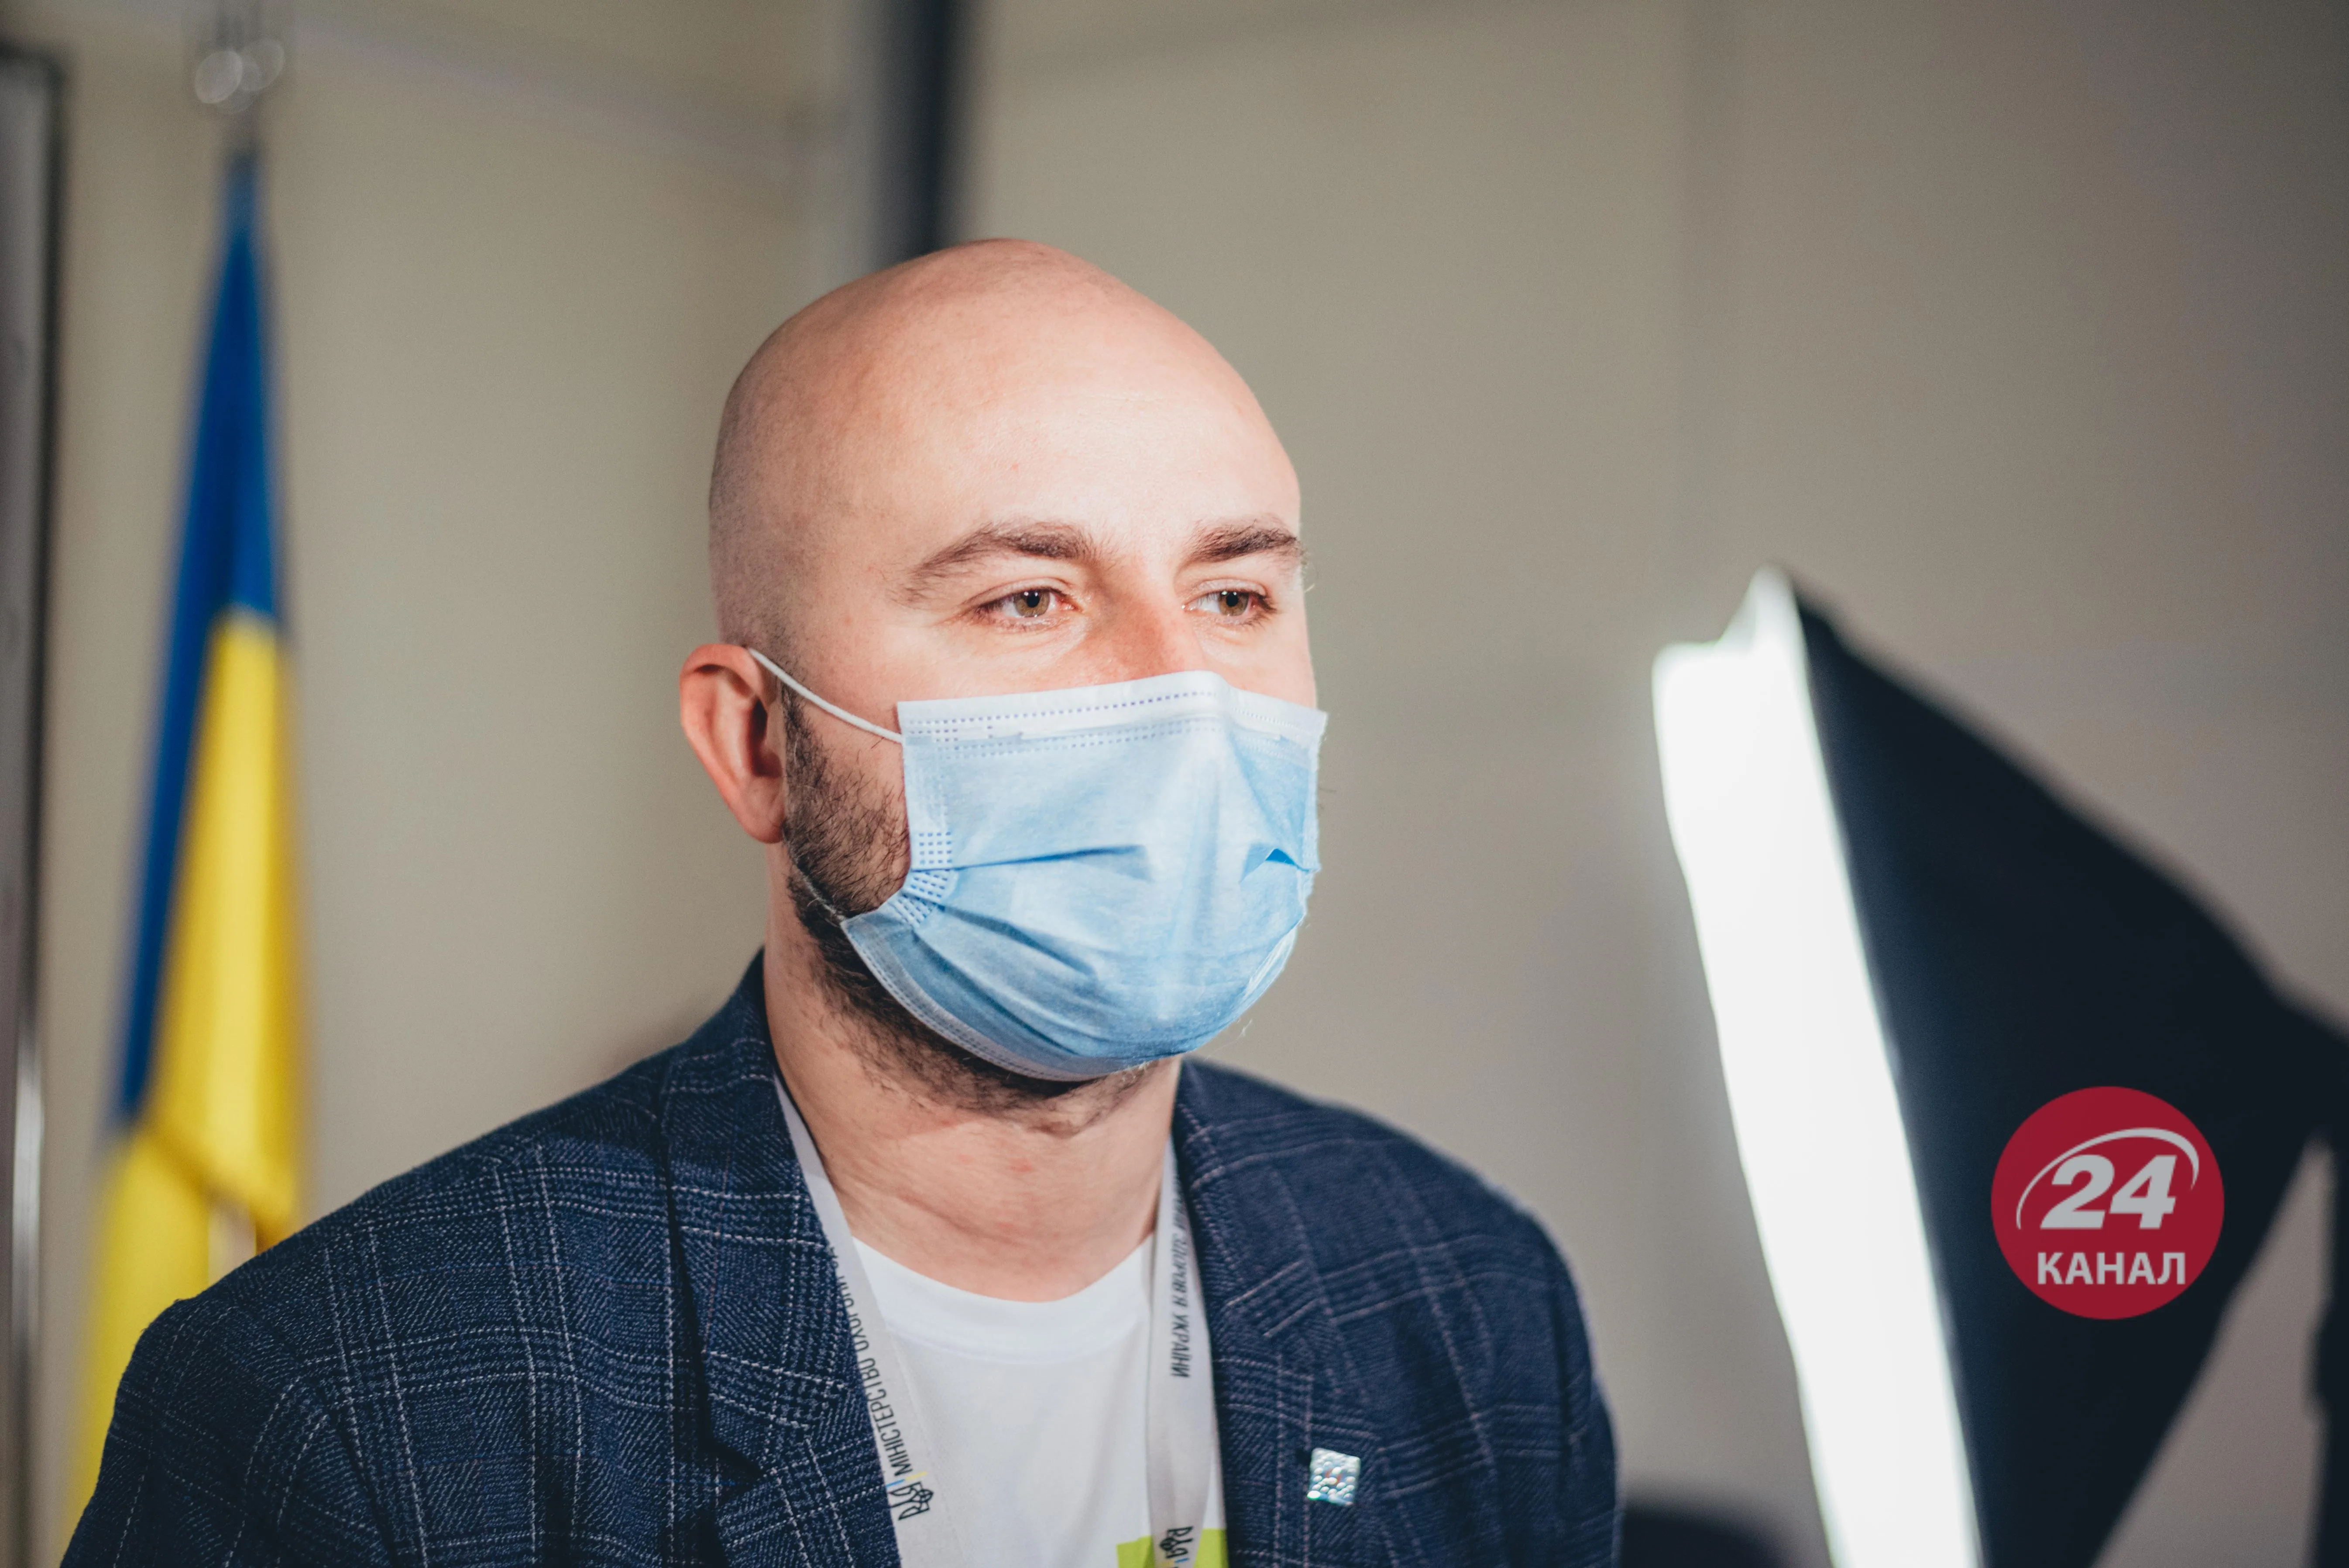 Олександр Заіка, Центр громадського здоров'я, вакцинація, антивакцинатори, медичні міфи